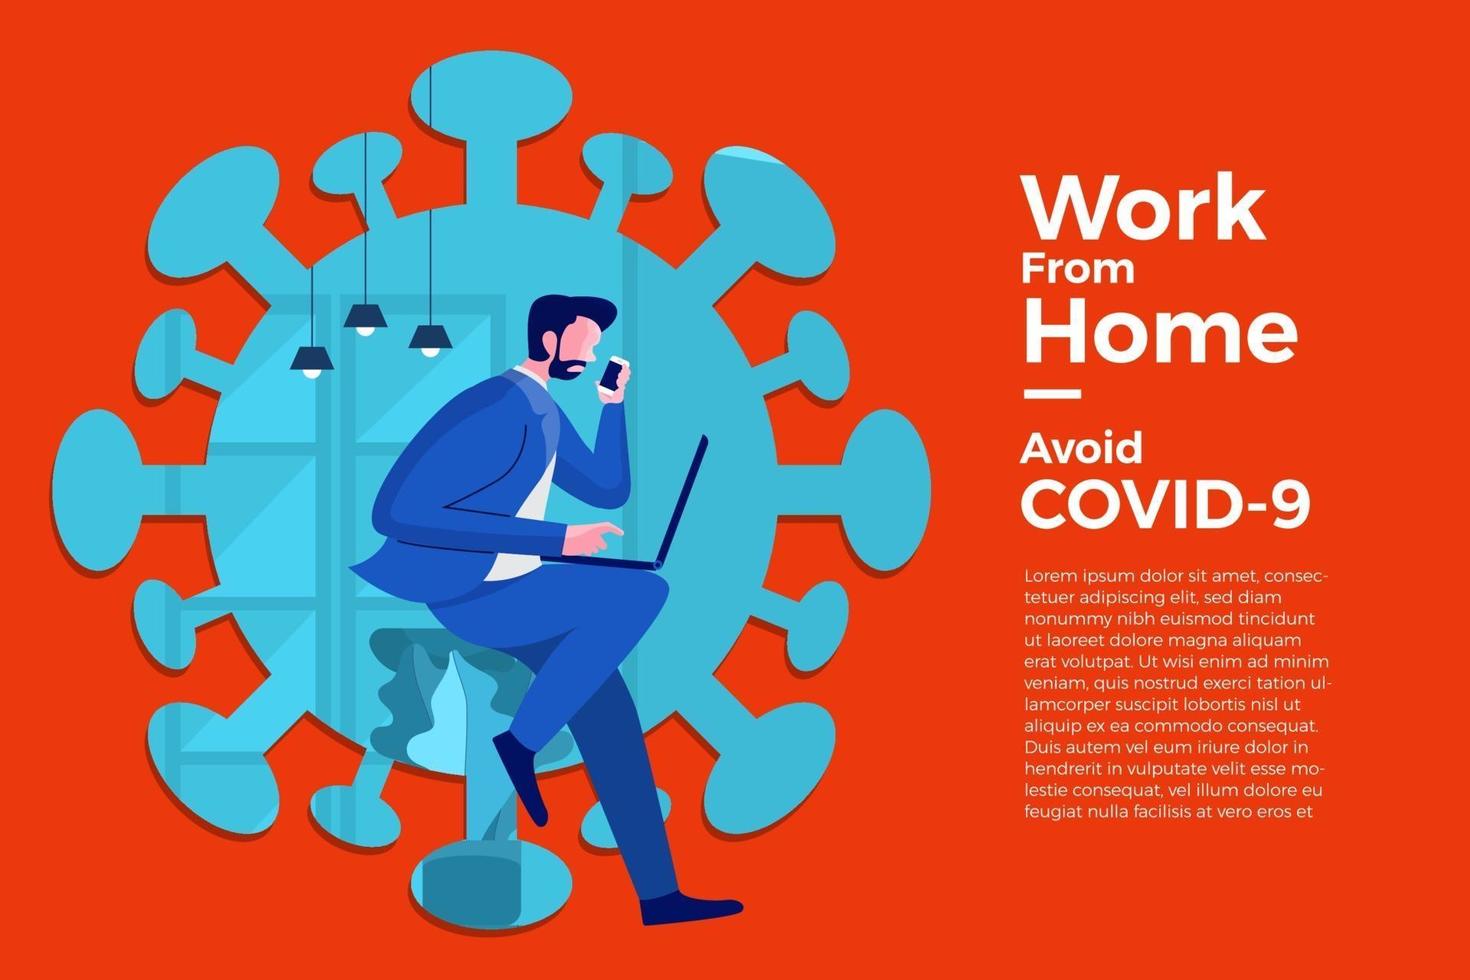 Coronavirus (COVID-19. Das Unternehmen ermöglicht es Mitarbeitern, von zu Hause aus zu arbeiten, um Viren zu vermeiden vektor